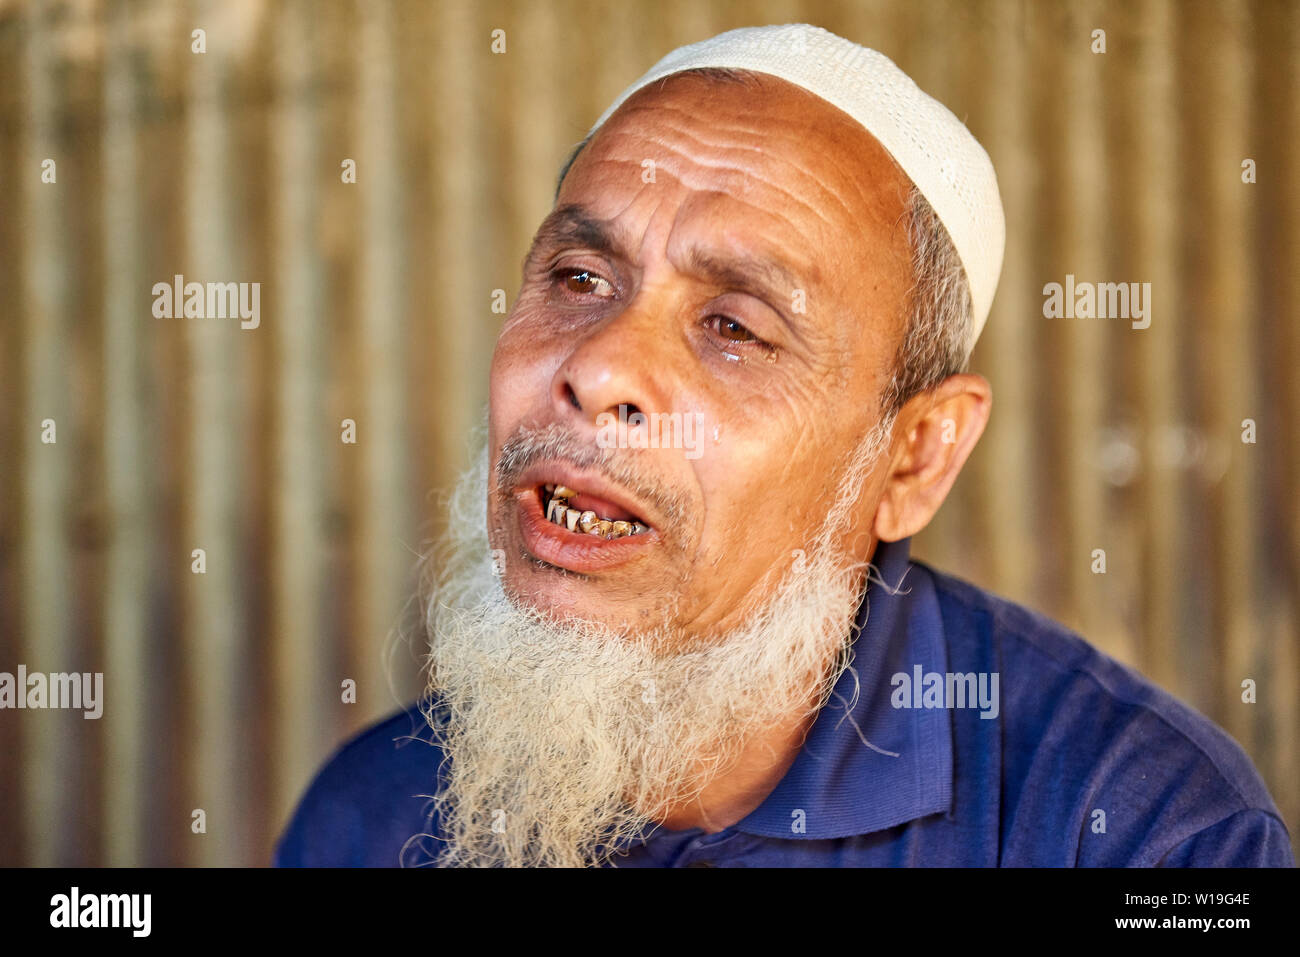 Portrait of Rohingya man in Kutupalong Rohingya Refugee Camp, Bangladesh Stock Photo